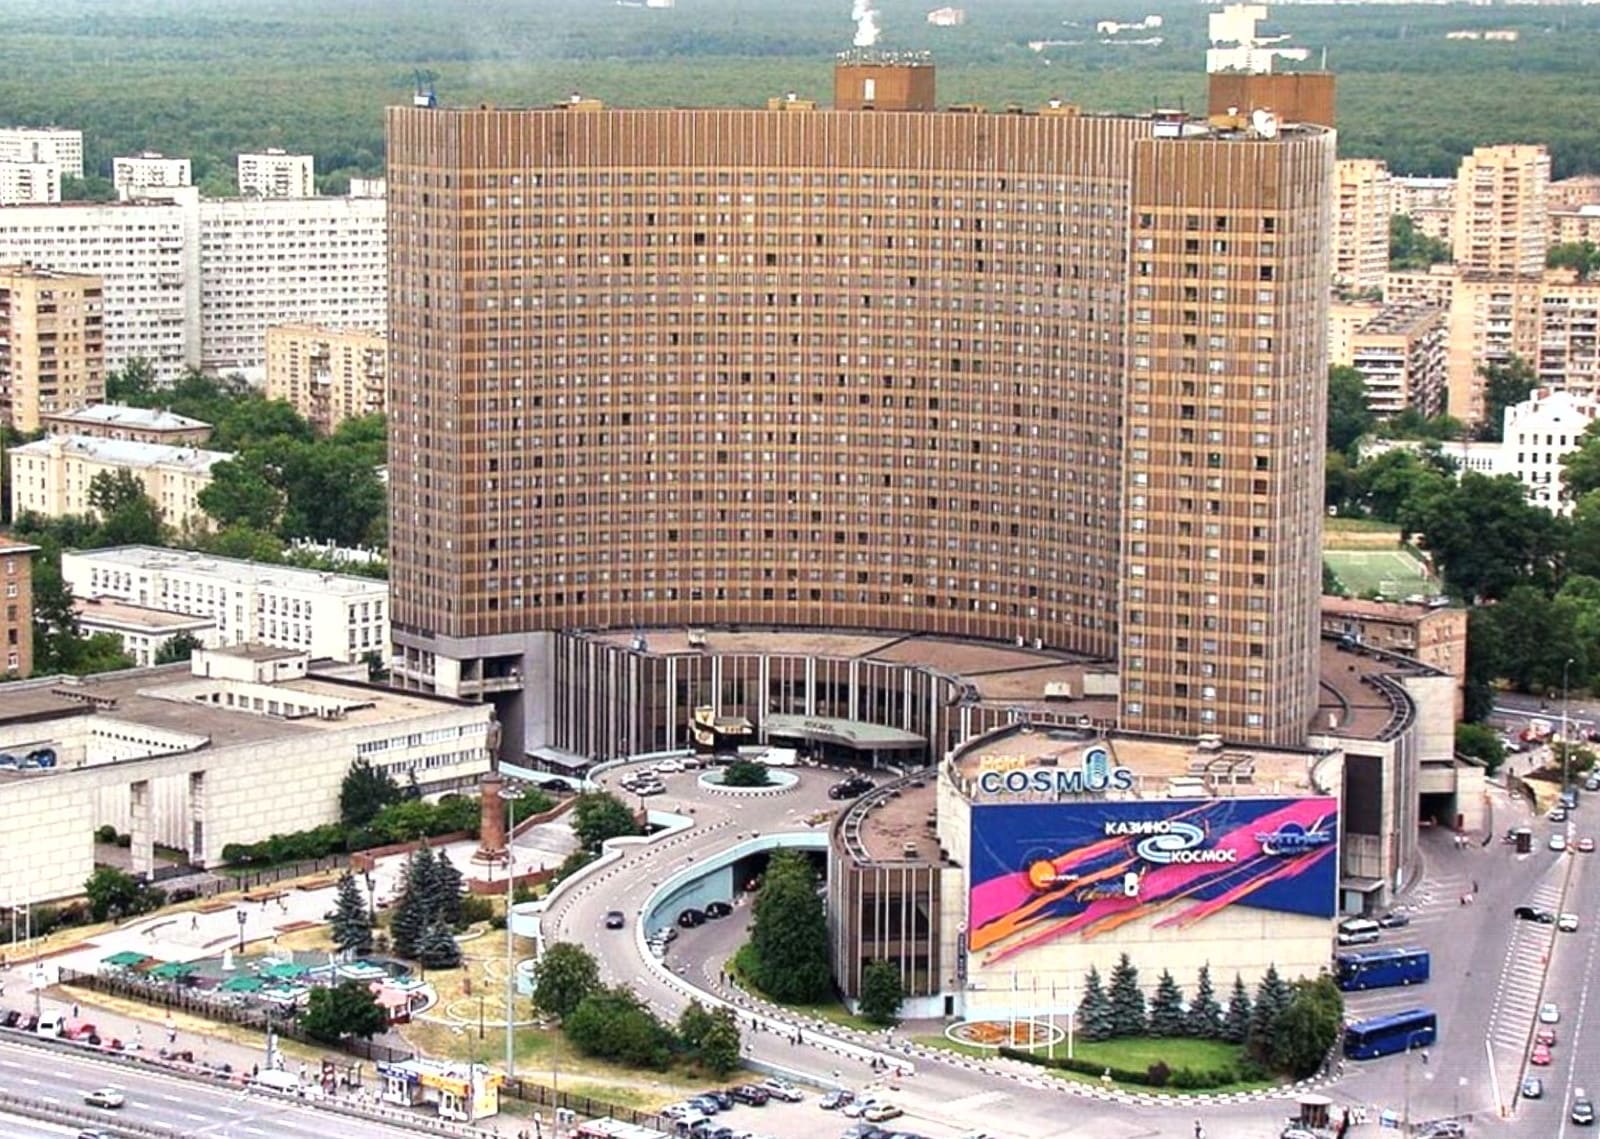 отель космос в москве официальный сайт